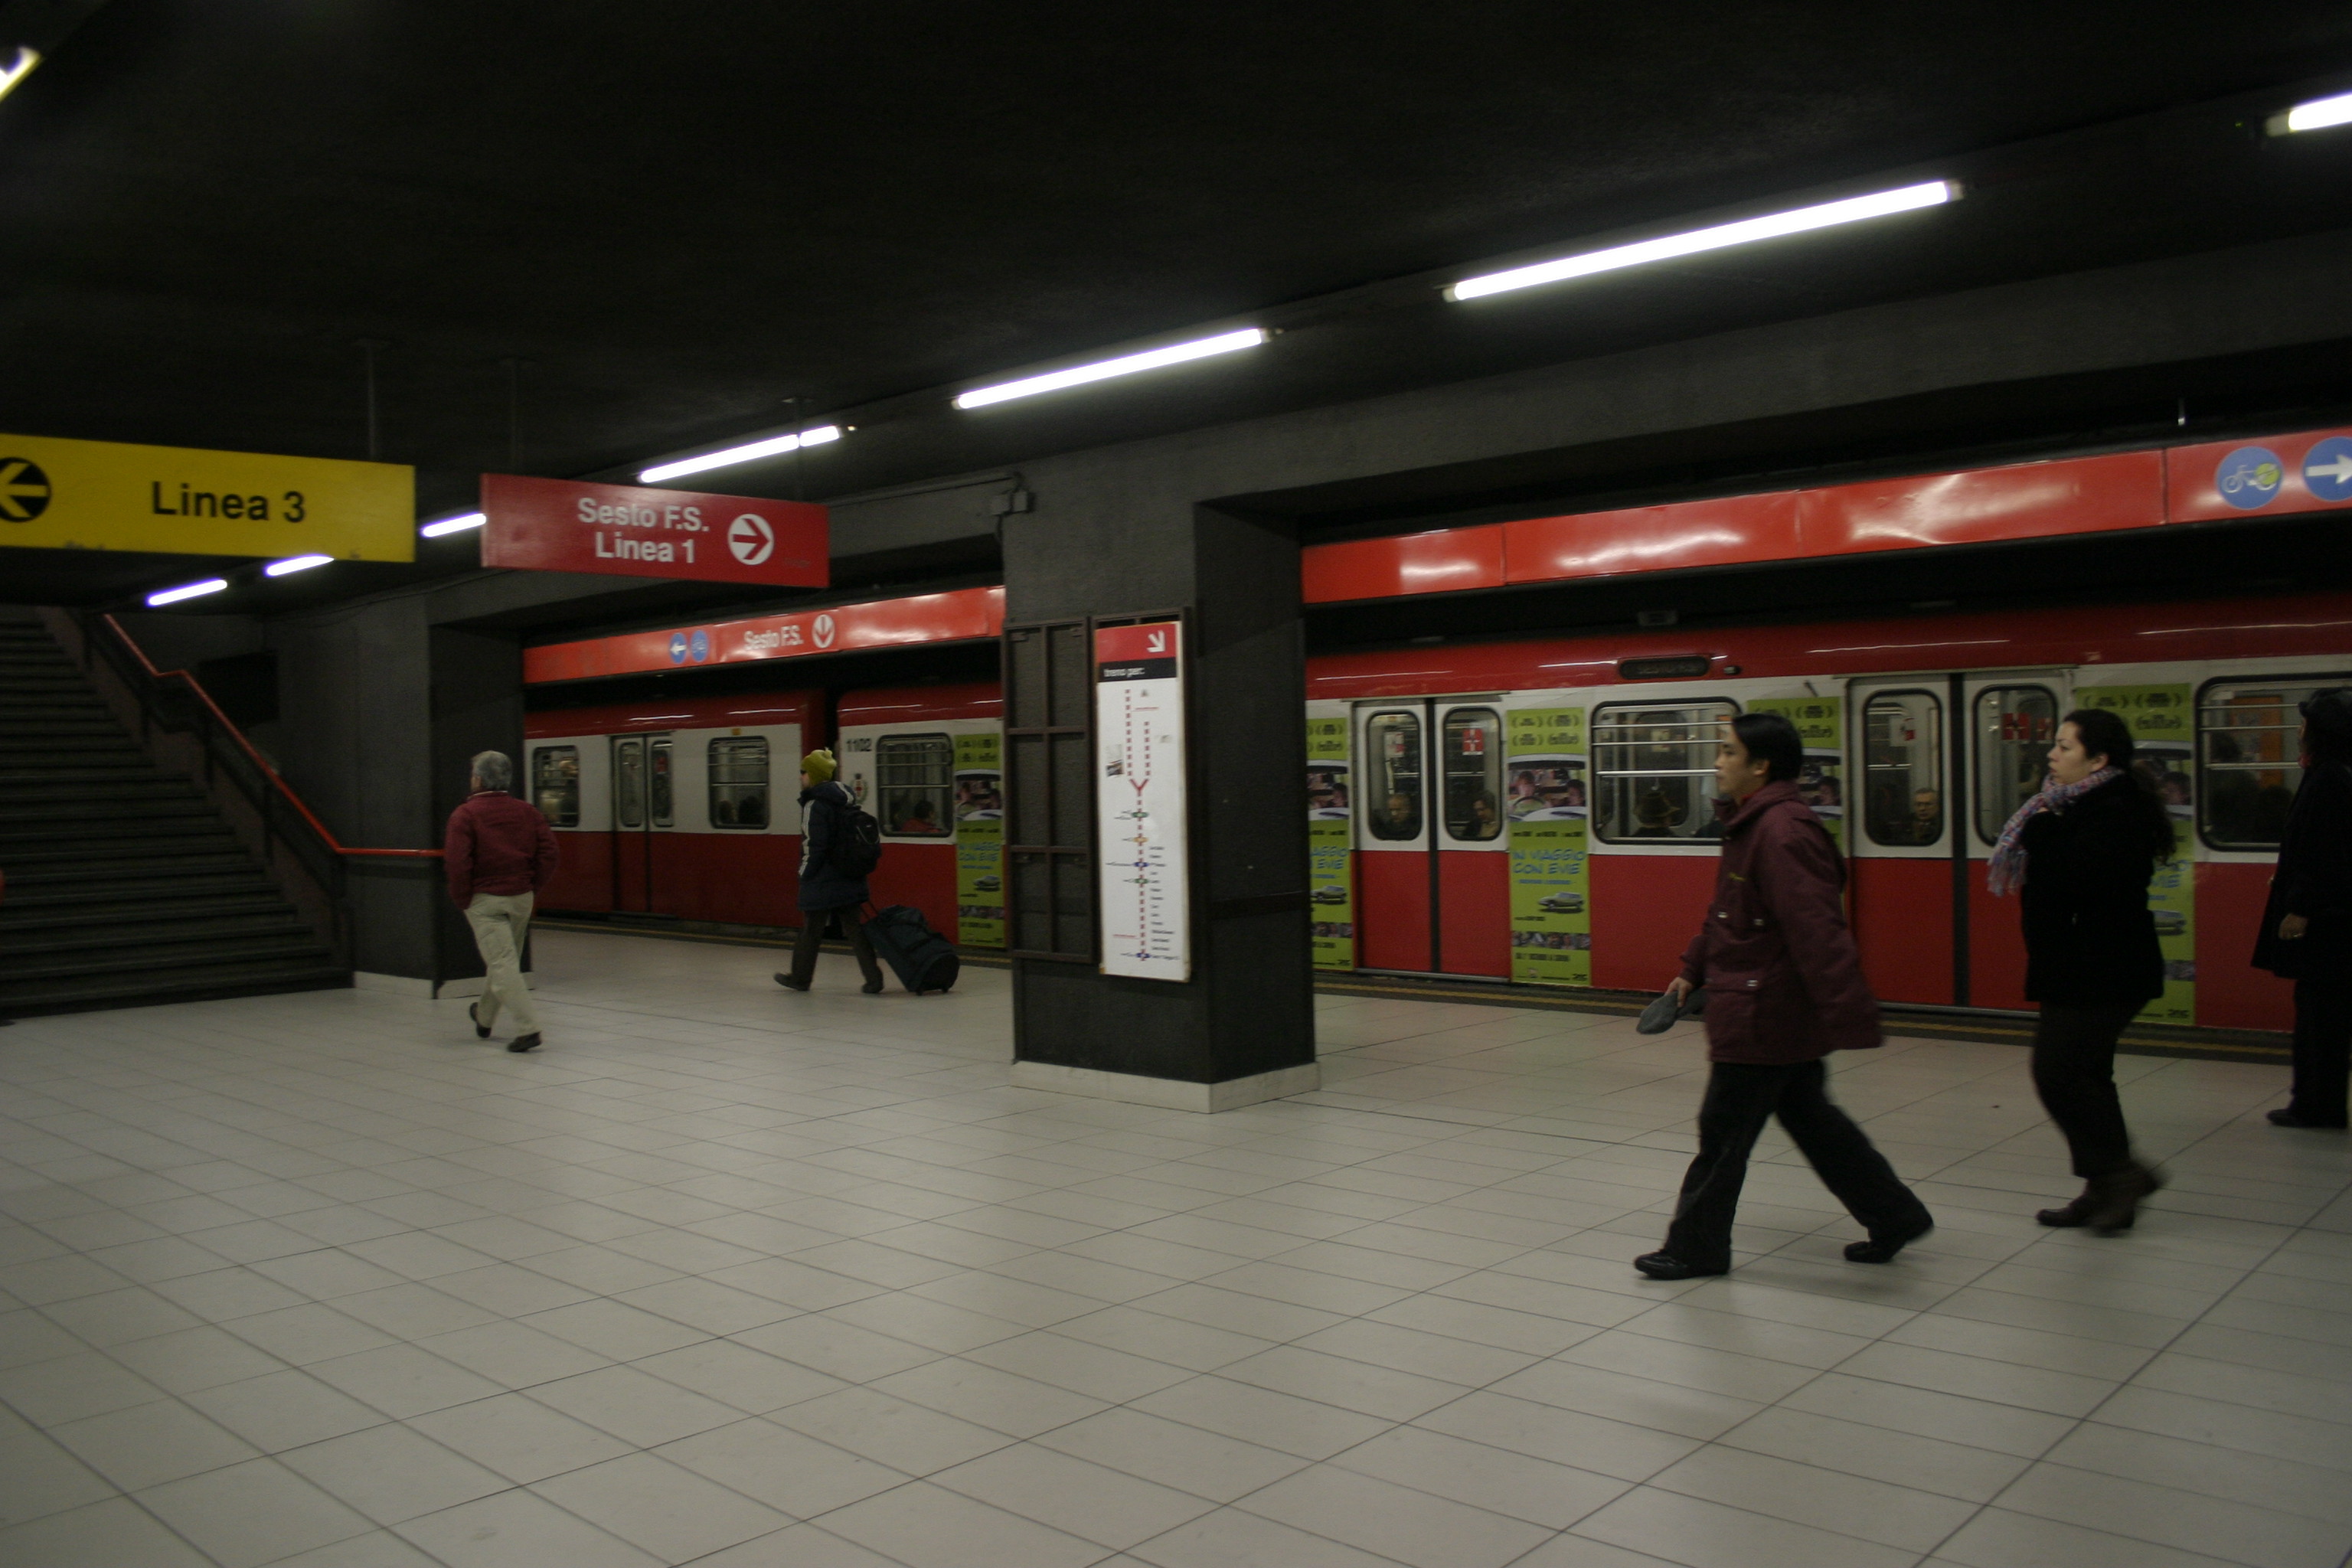 Milan metro train